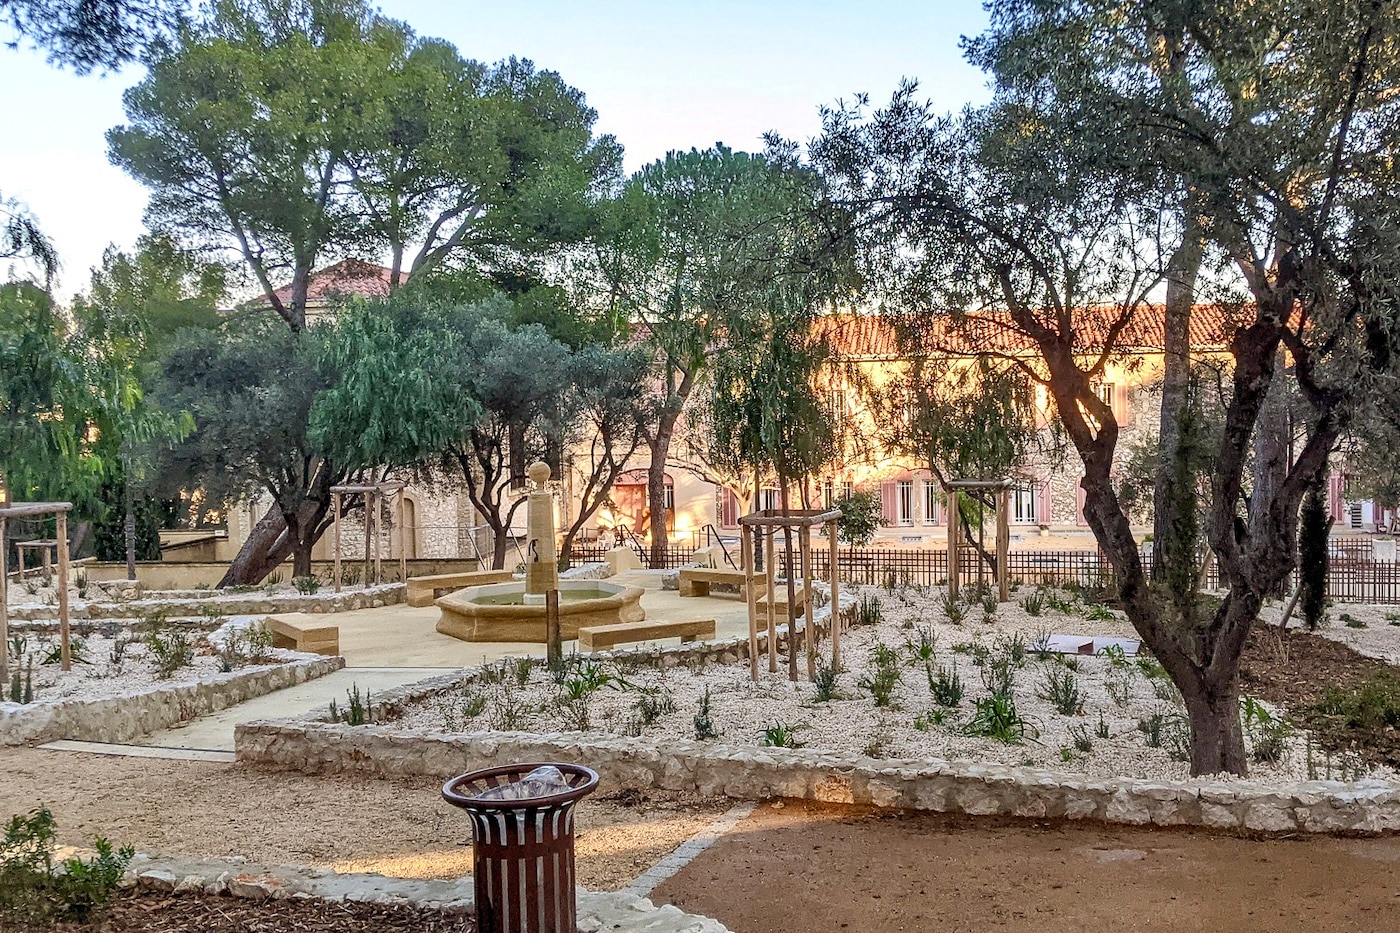 sœurs franciscaines, Entre nature et patrimoine, le parc des Sœurs Franciscaines rouvre en février, Made in Marseille